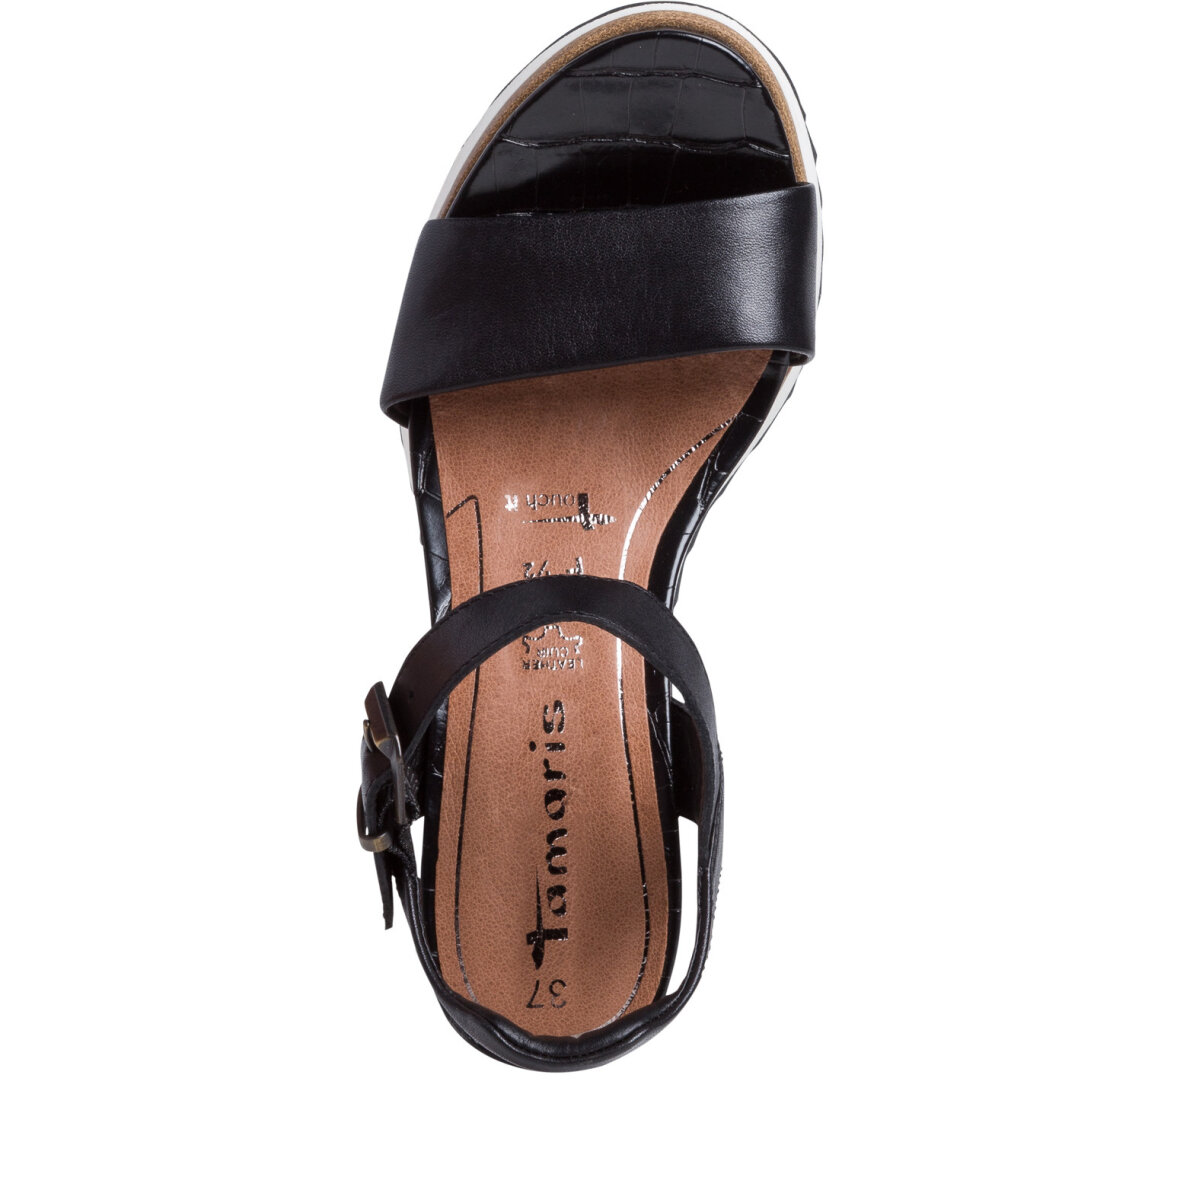 Tamaris sort sandal 6,5 cm